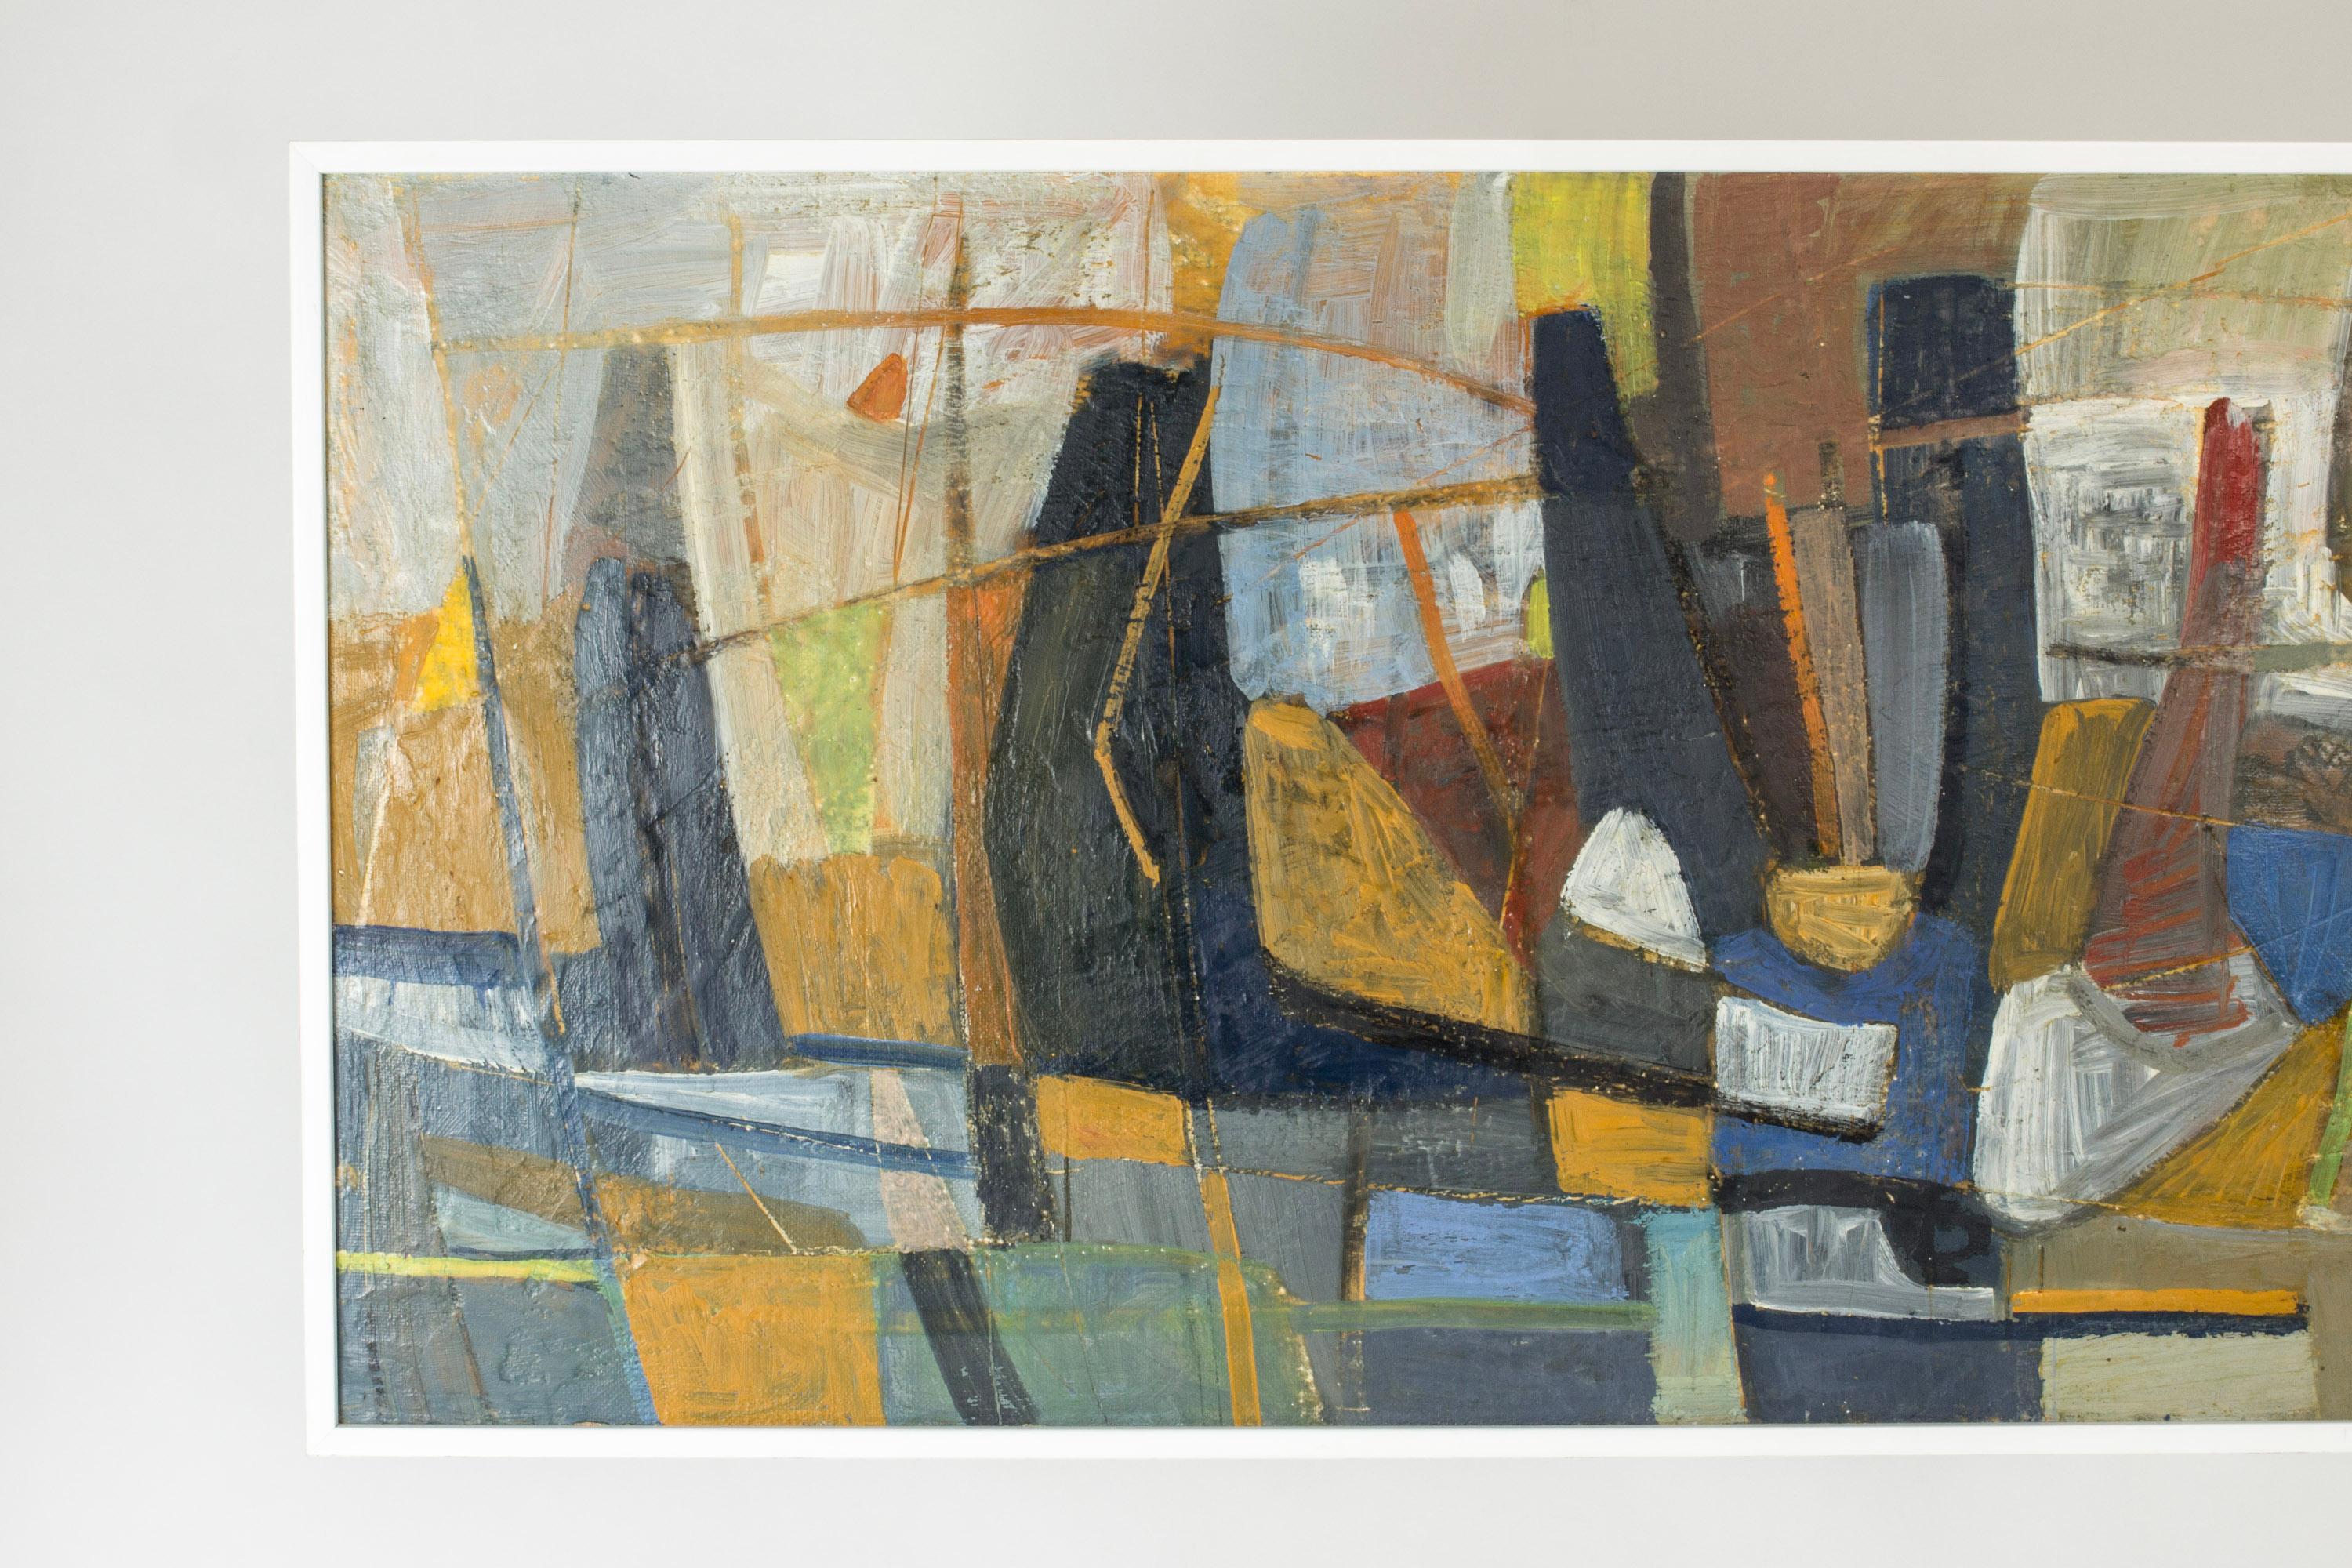 Grande peinture à l'huile de Nils Wedel (1897-1967), avec un motif abstrait. Des couleurs naturelles atténuées se combinent à des tons orange et bleu frappants dans des formes asymétriques et graphiques.